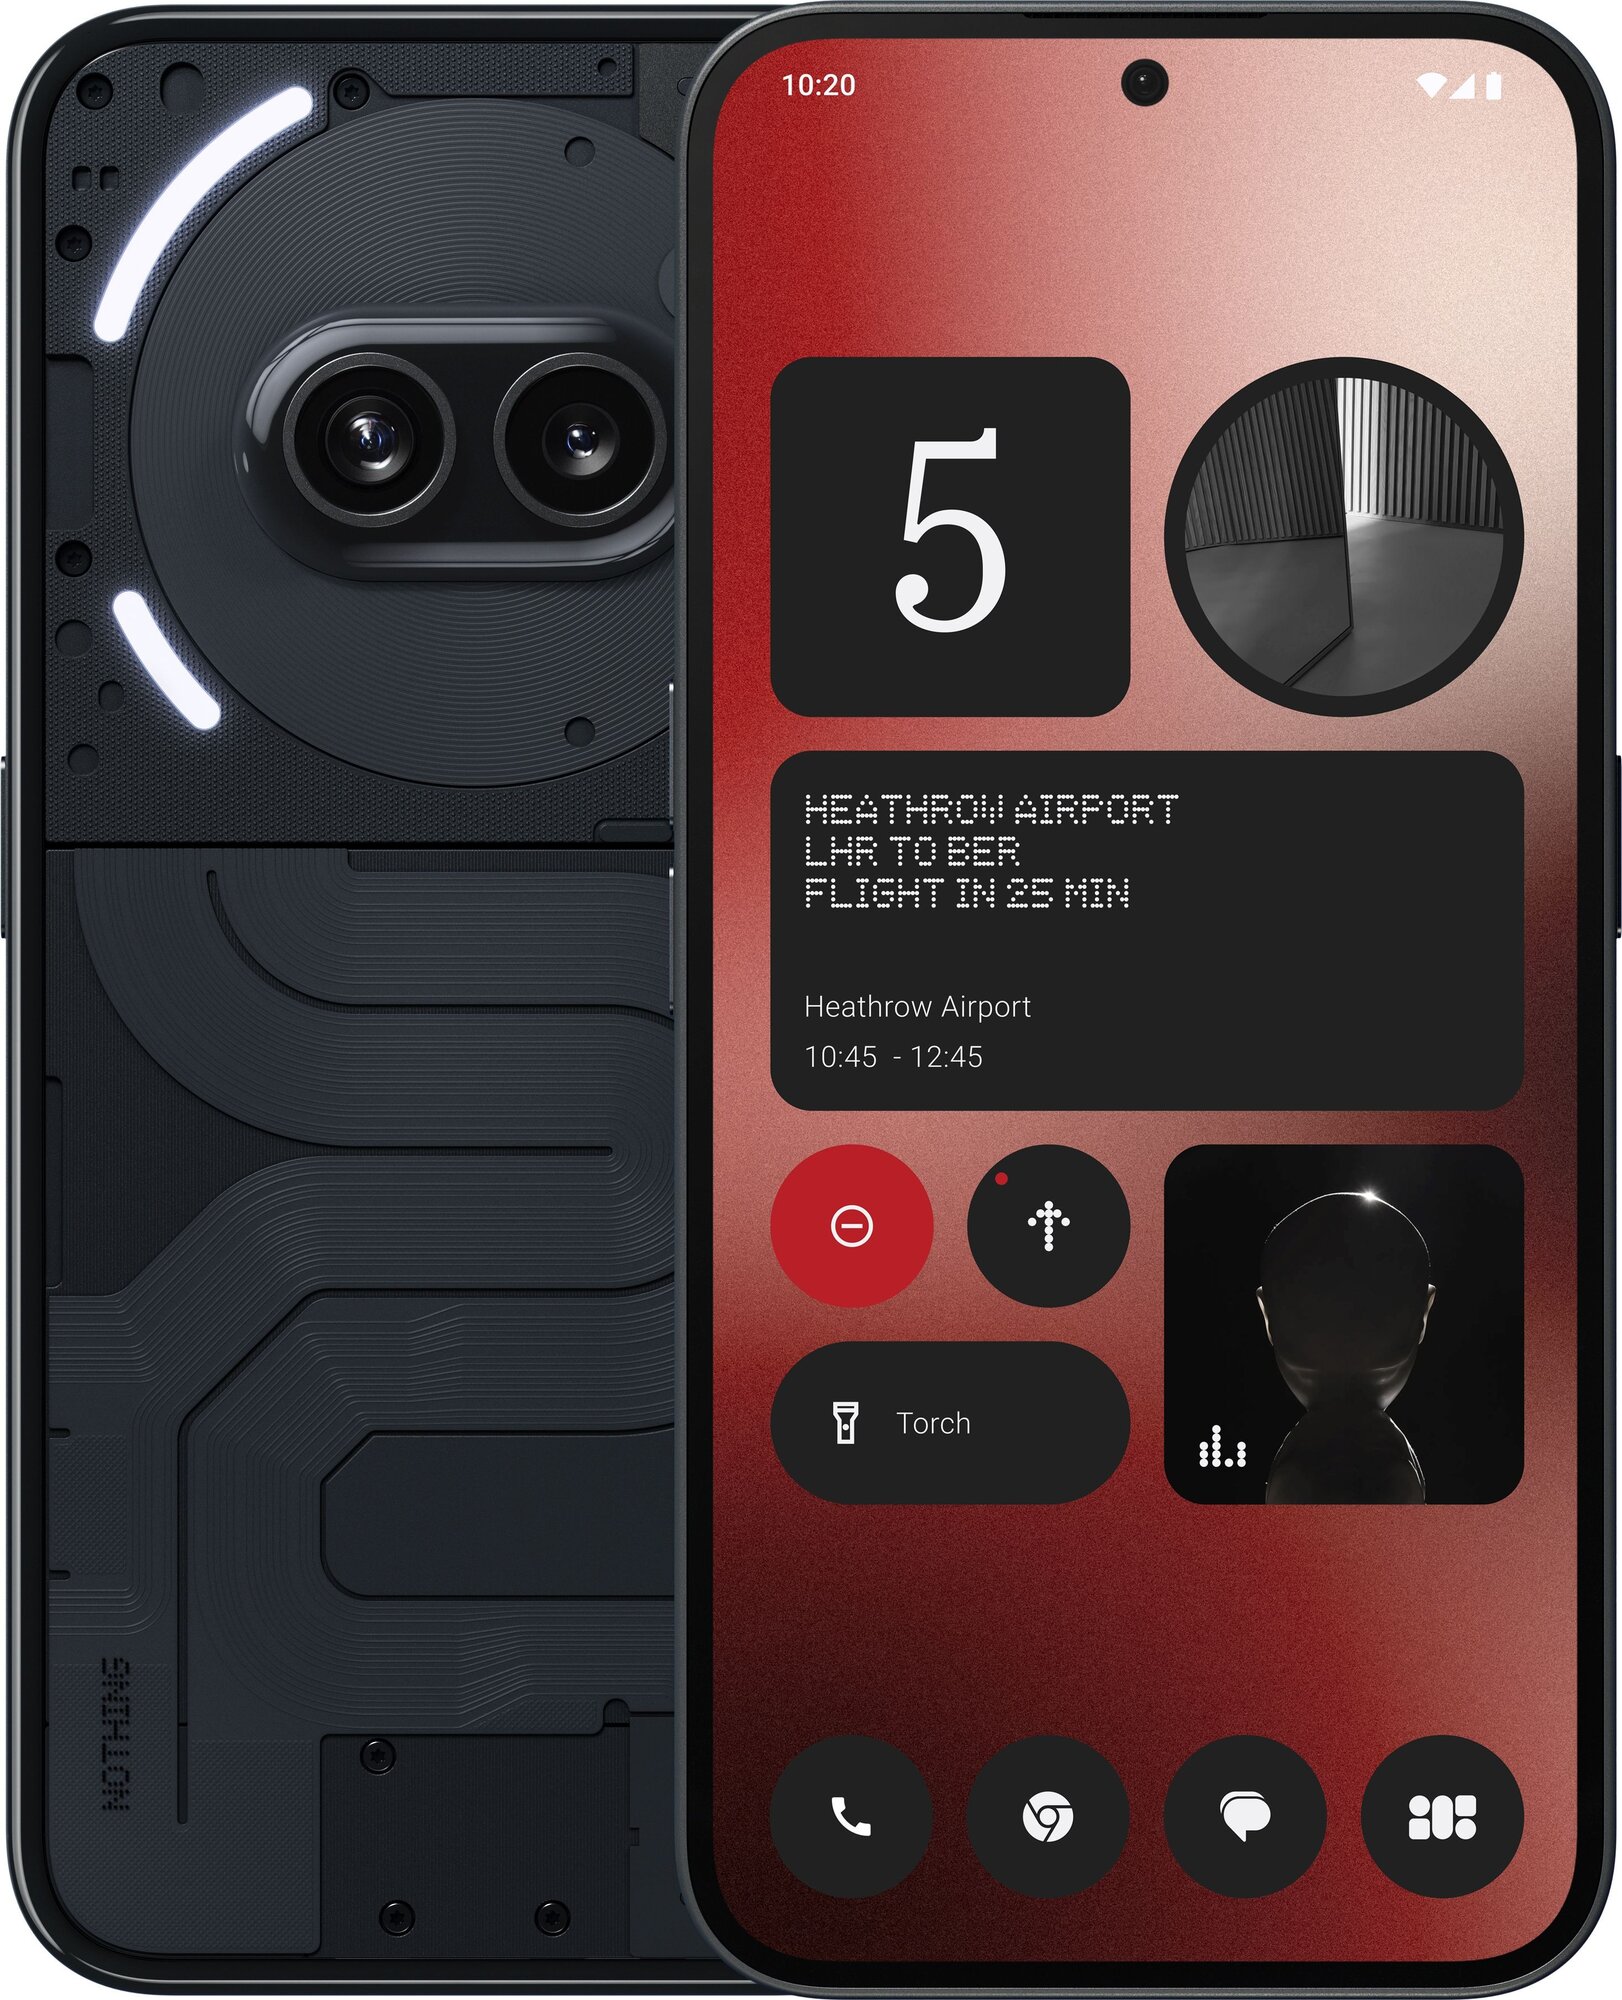 Смартфон Nothing phone (2a) 8/128 ГБ, Dual nano SIM, черный — купить в интернет-магазине по низкой цене на Яндекс Маркете